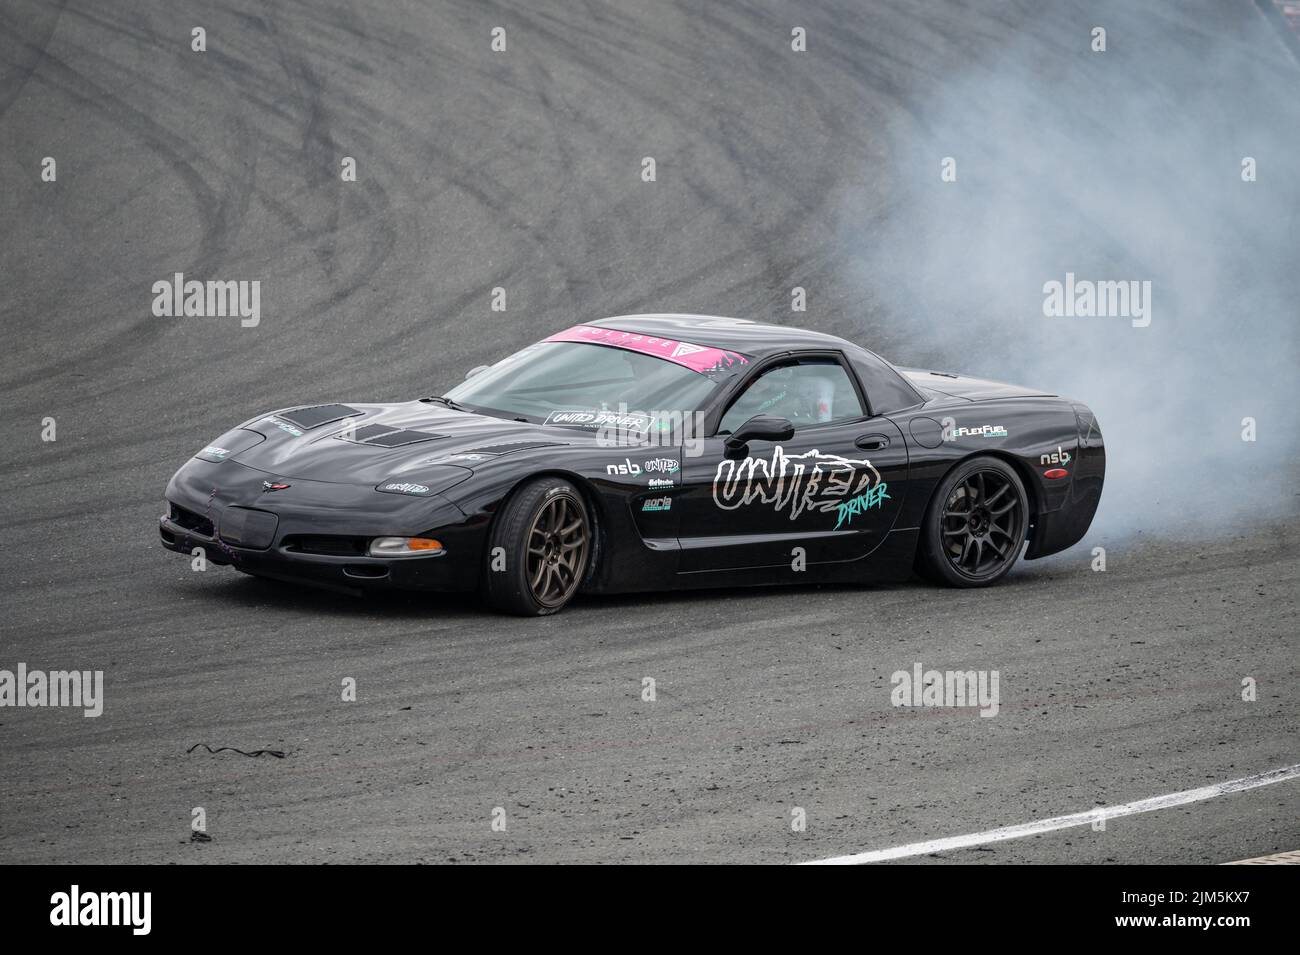 Black Chevrolet Corvette C5 drifting in the track Stock Photo